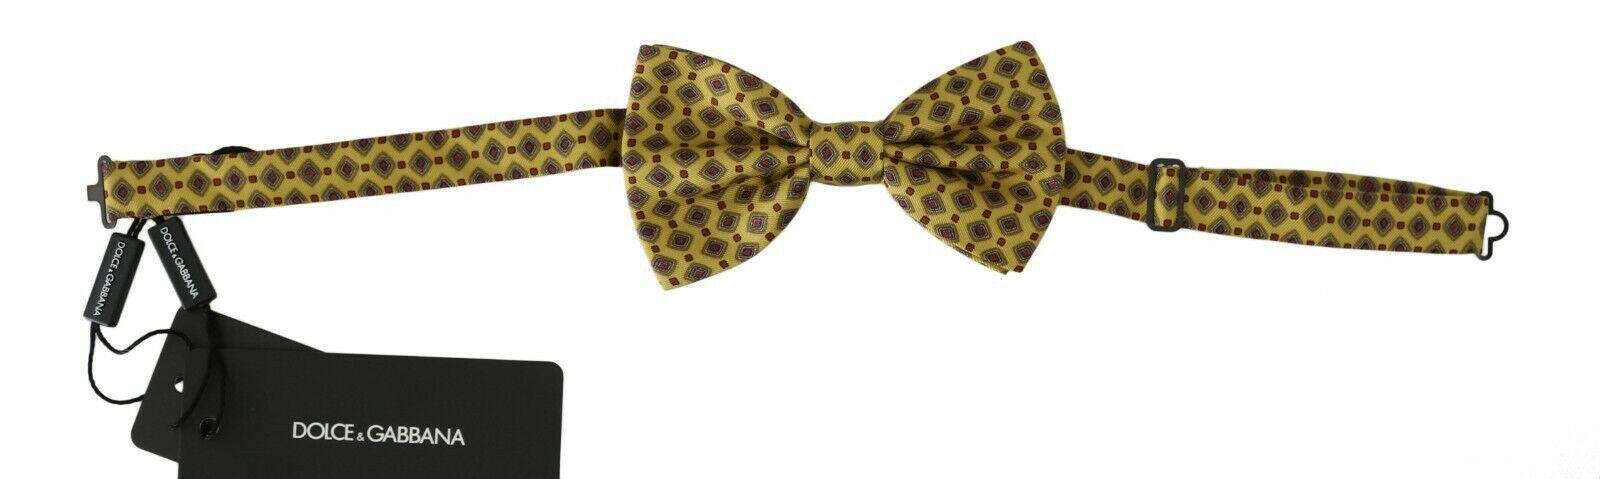 Dolce & Gabbana Yellow Pattern Silk Adjustable Neck Tie - GENUINE AUTHENTIC BRAND LLC  